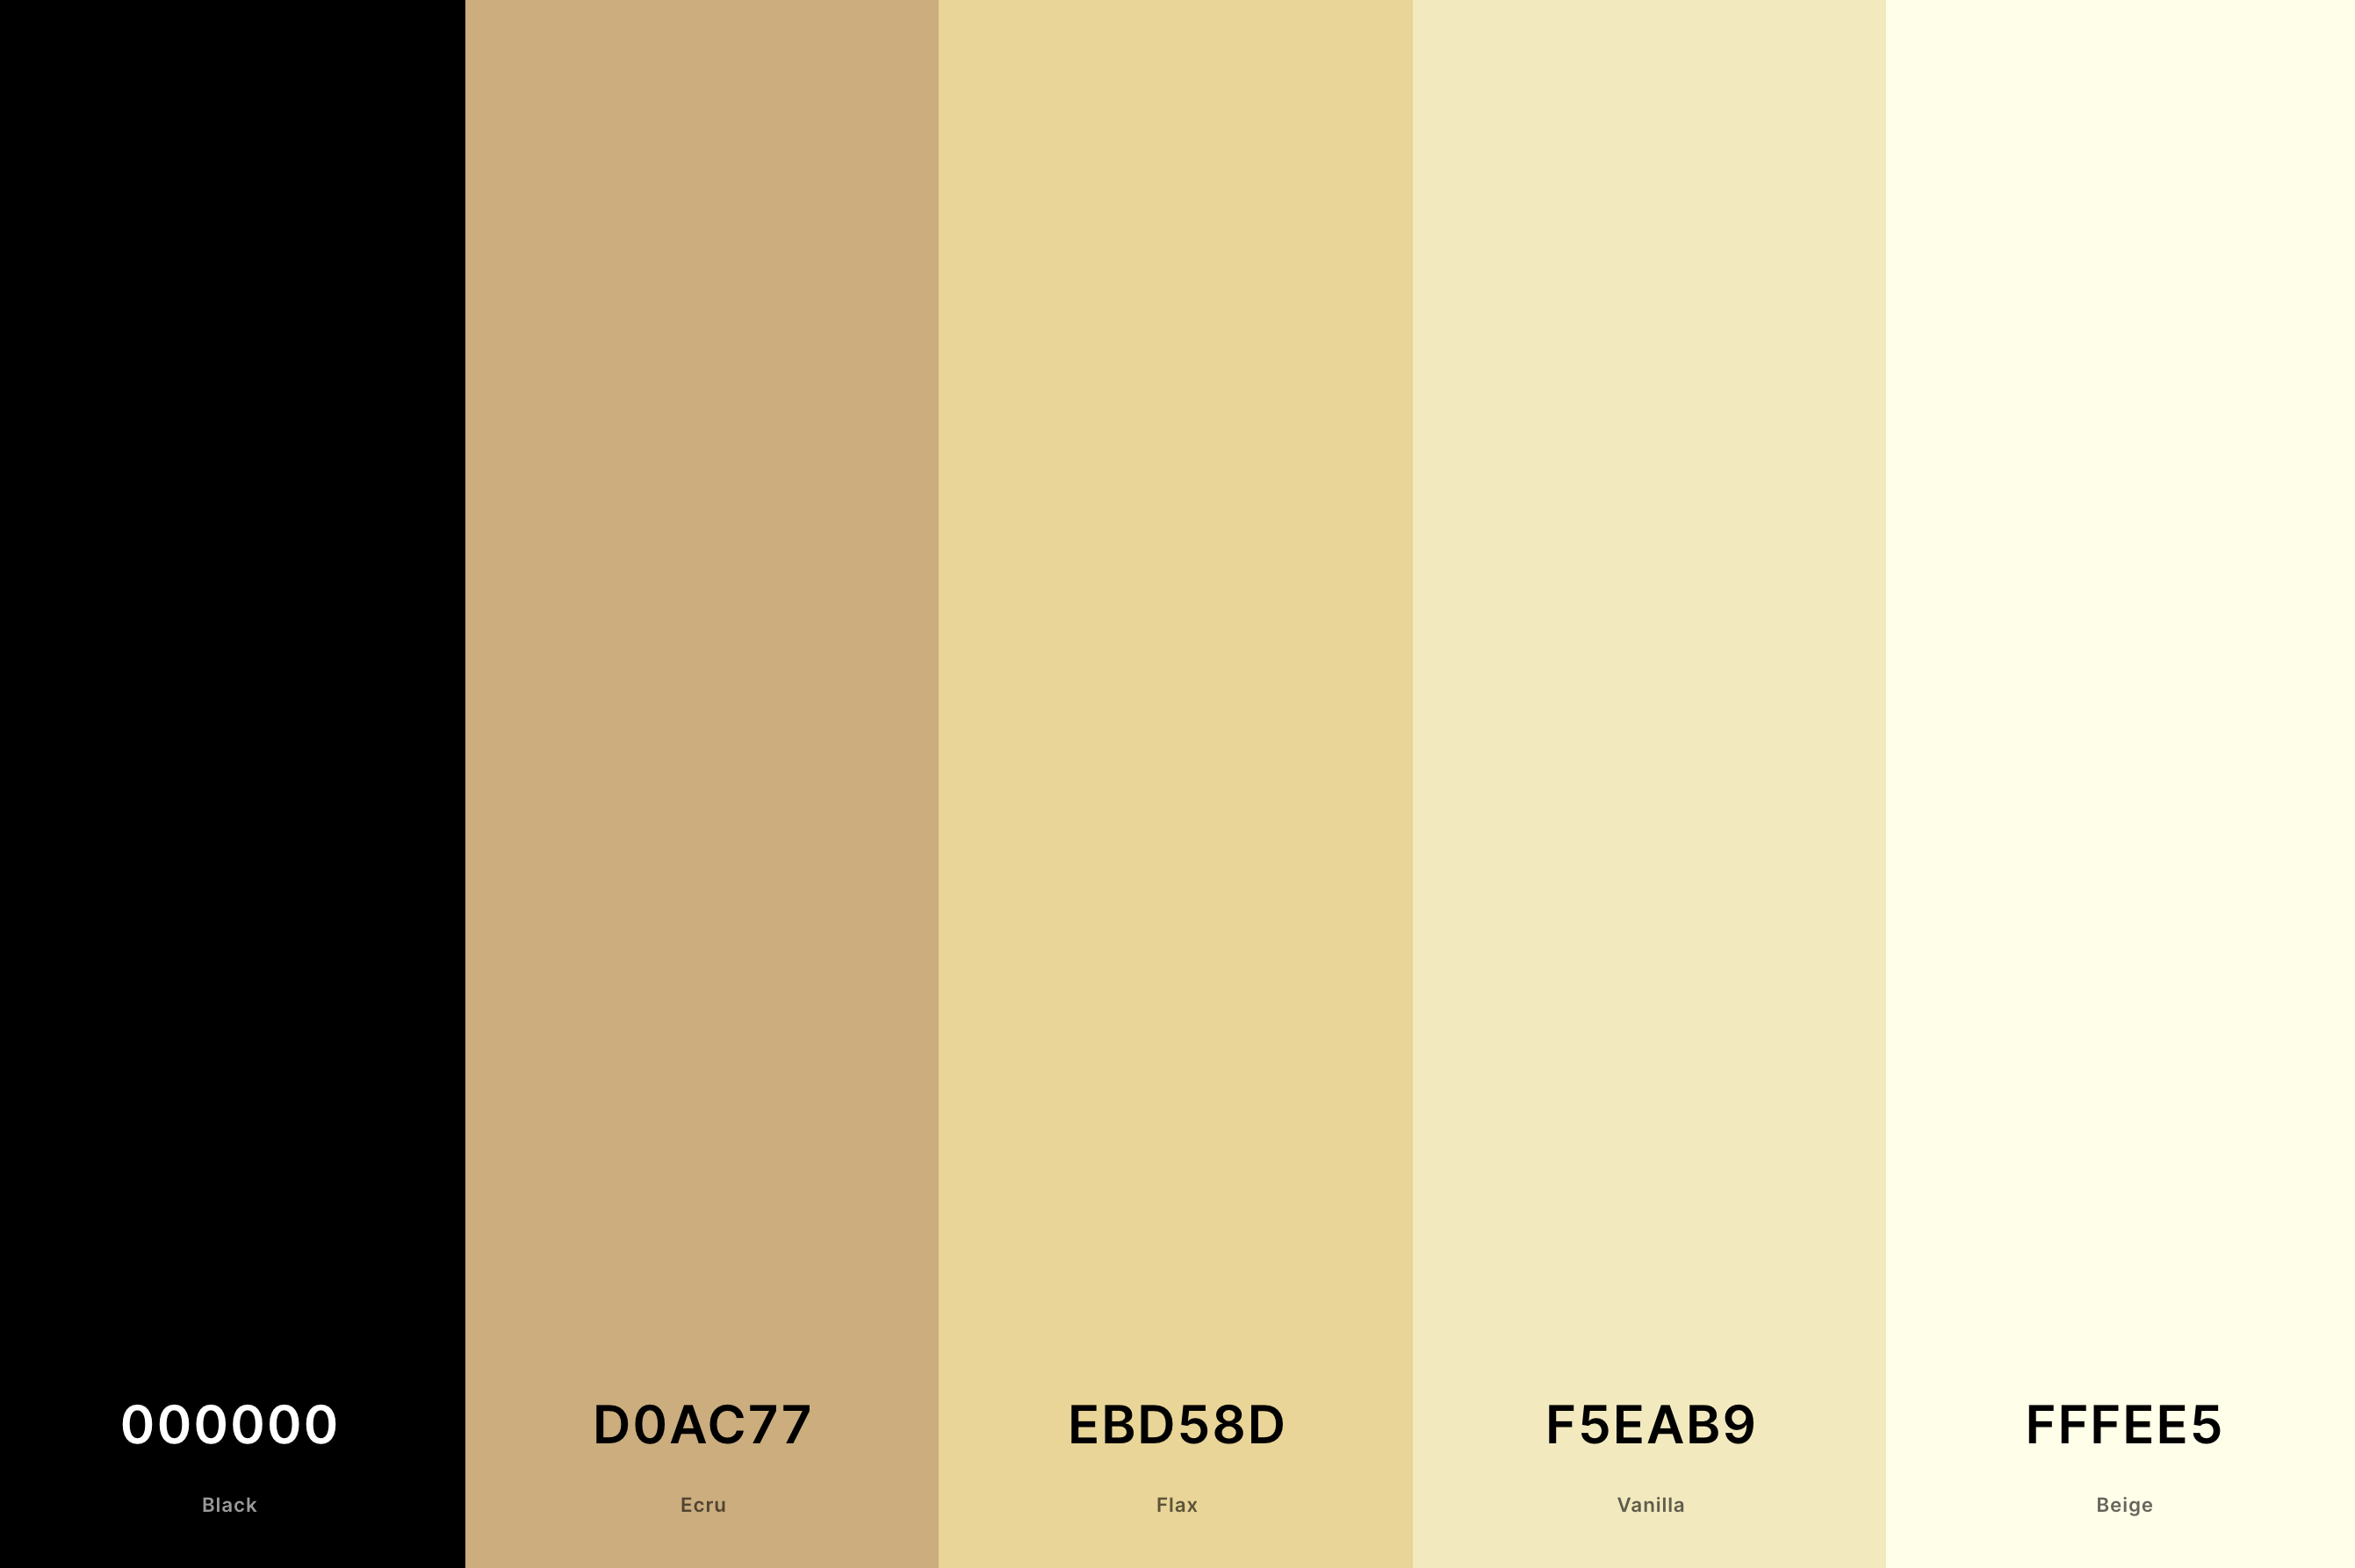 8. Black And Cream Color Palette Color Palette with Black (Hex #000000) + Ecru (Hex #D0AC77) + Flax (Hex #EBD58D) + Vanilla (Hex #F5EAB9) + Beige (Hex #FFFEE5) Color Palette with Hex Codes